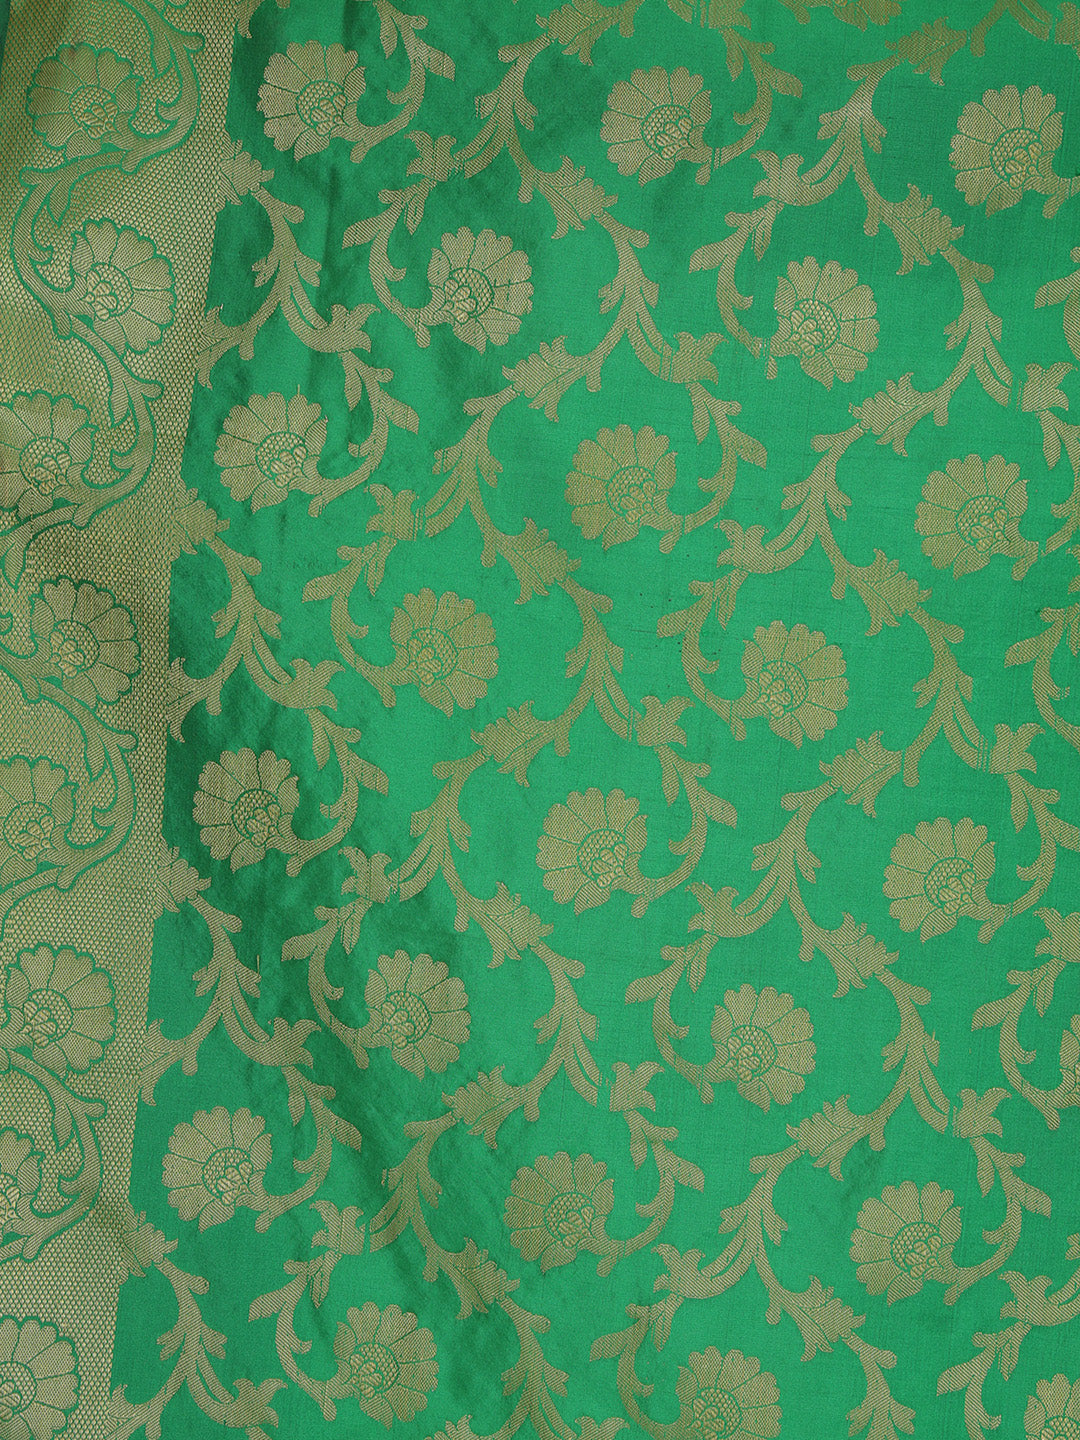 Saundarya Women's Dark Green Banarasi Silk Golden Zari Work Dupatta